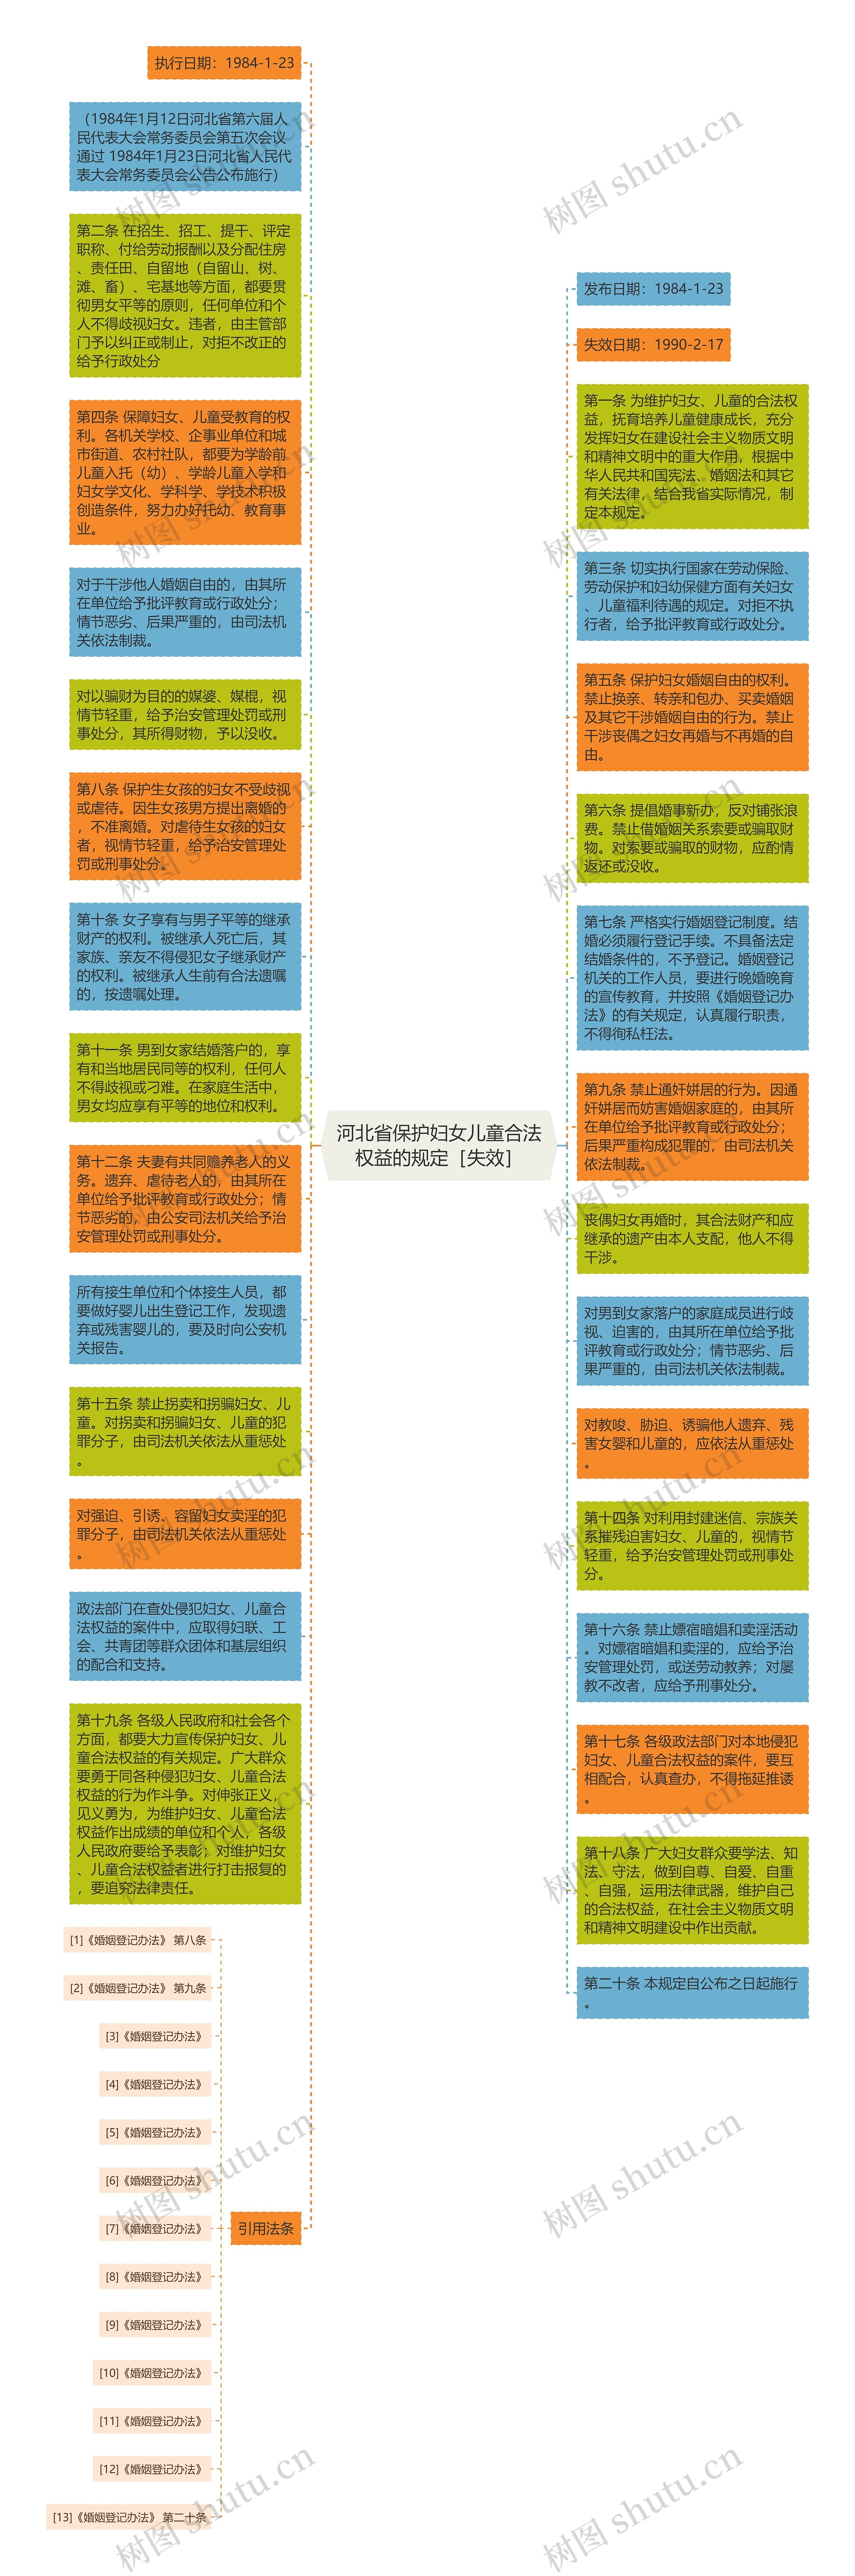 河北省保护妇女儿童合法权益的规定［失效］思维导图